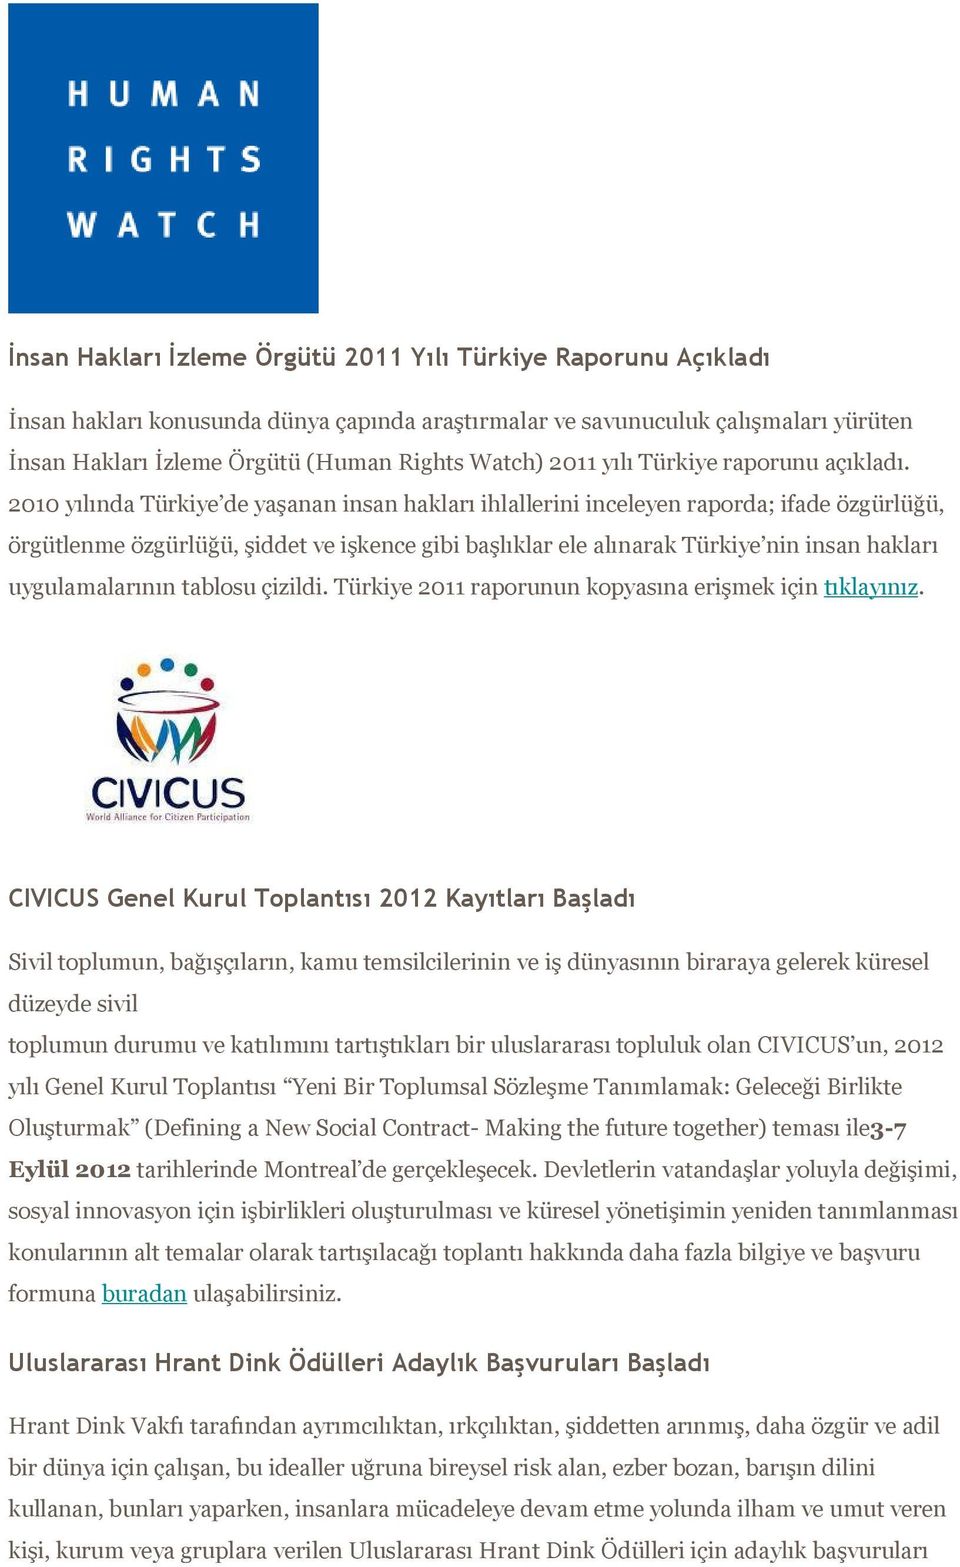 2010 yılında Türkiye de yaşanan insan hakları ihlallerini inceleyen raporda; ifade özgürlüğü, örgütlenme özgürlüğü, şiddet ve işkence gibi başlıklar ele alınarak Türkiye nin insan hakları